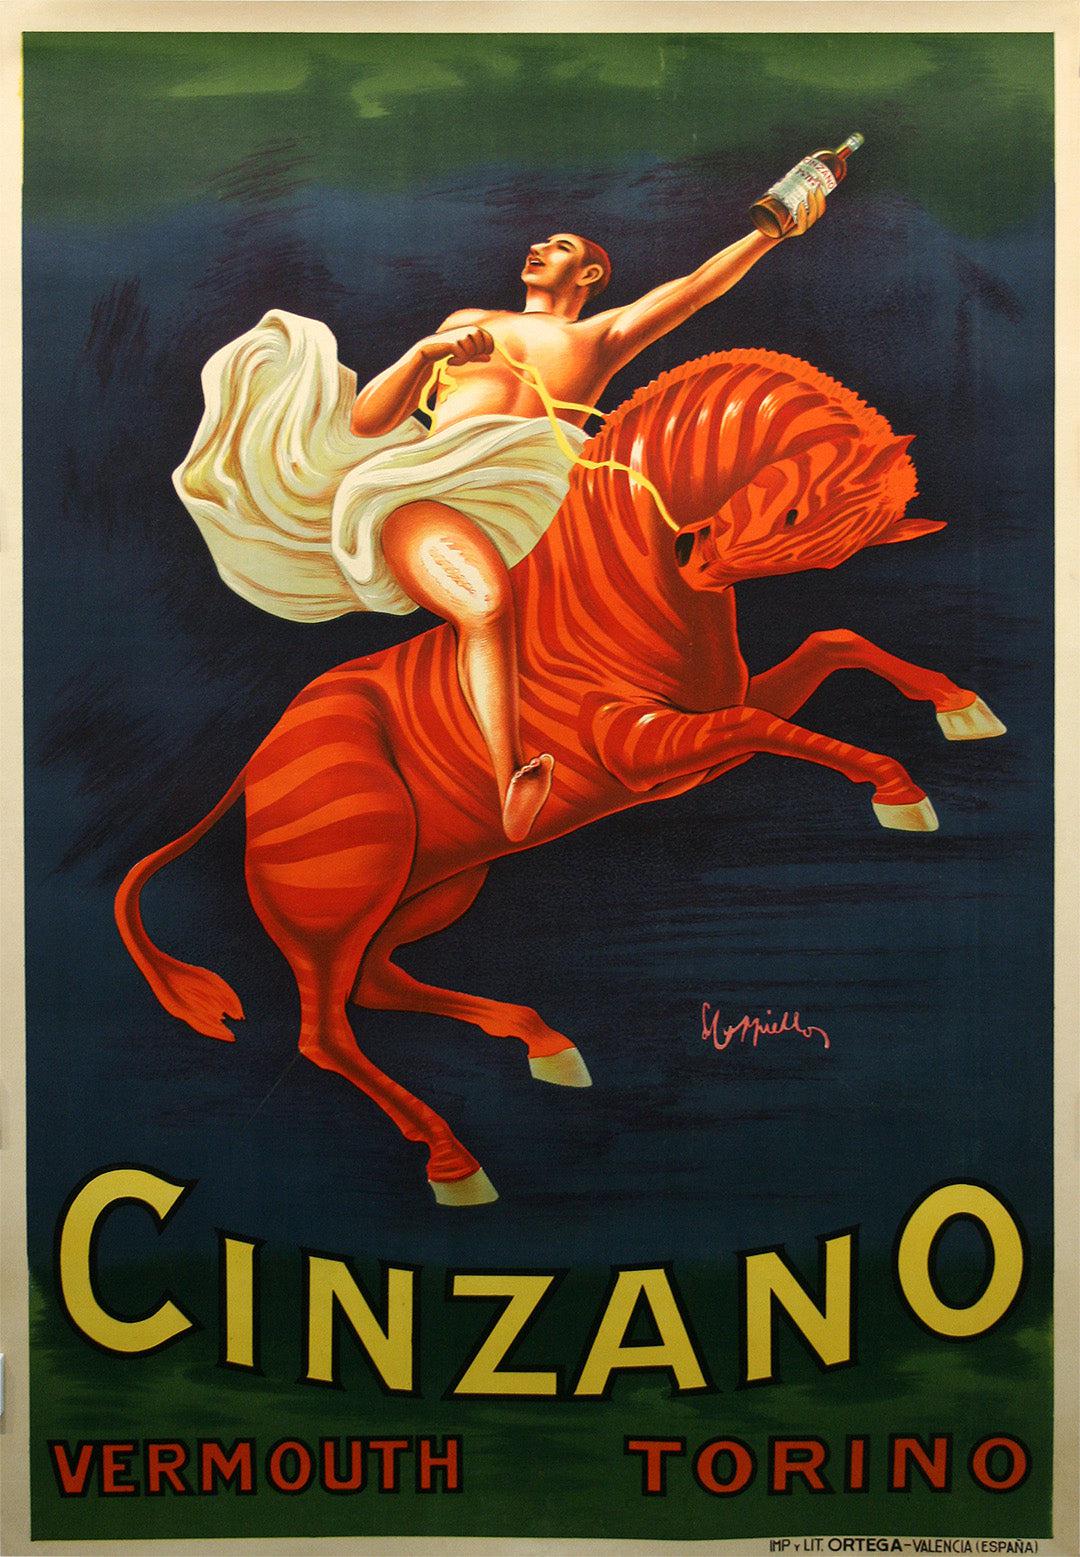 Original Vintage Cappiello Cinzano Vermouth Poster by Leonetto Cappiello 1910 Man on Striped Horse